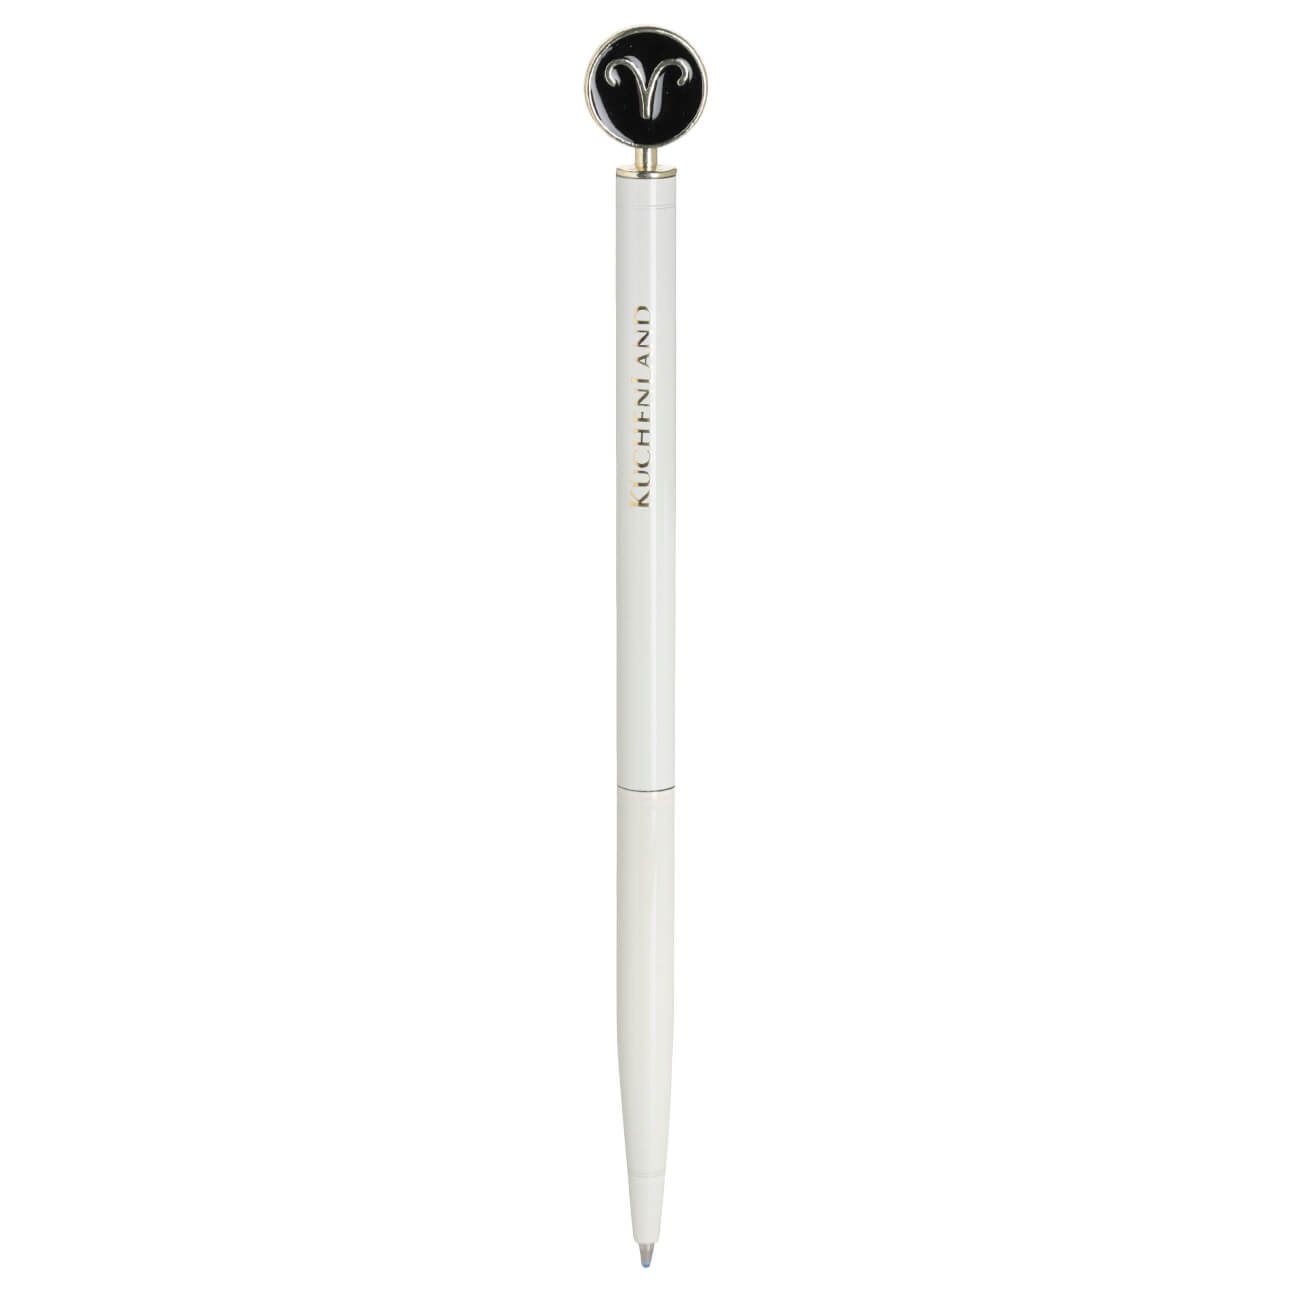 Ручка шариковая, 15 см, с фигуркой, сталь, молочно-золотистая, Овен, Zodiac ручка скоба cappio pc183 96 мм бронза